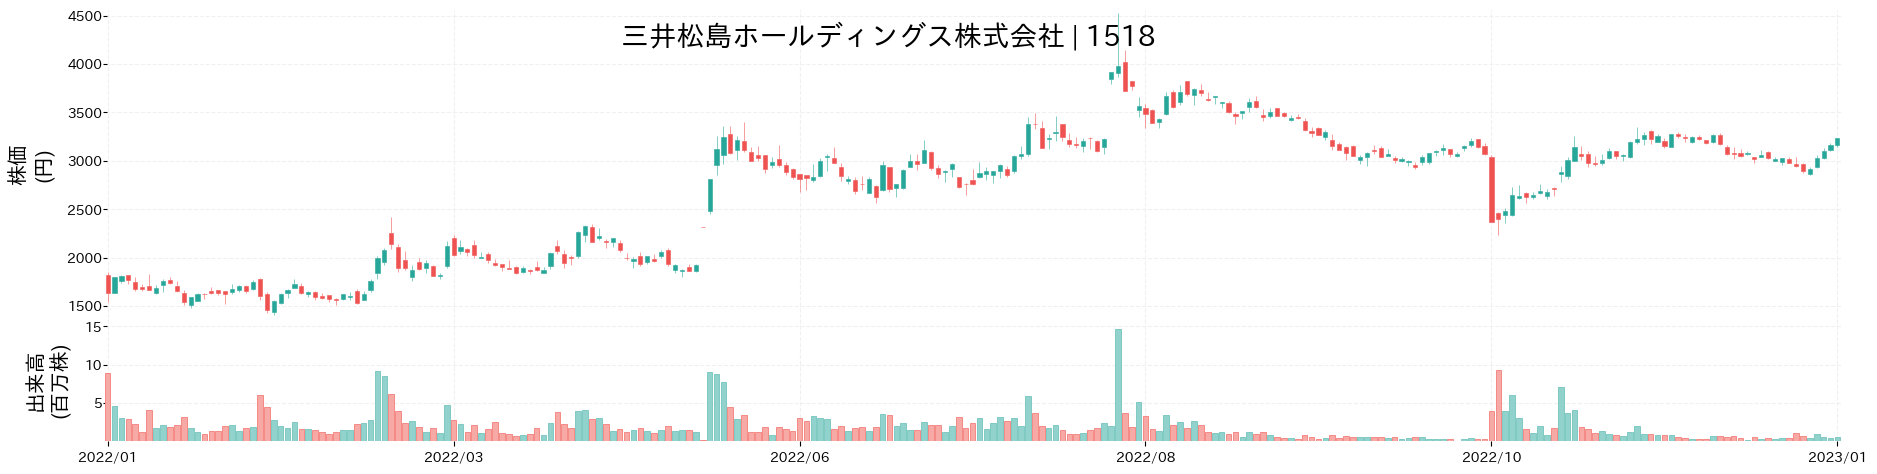 三井松島ホールディングスの株価推移(2022)